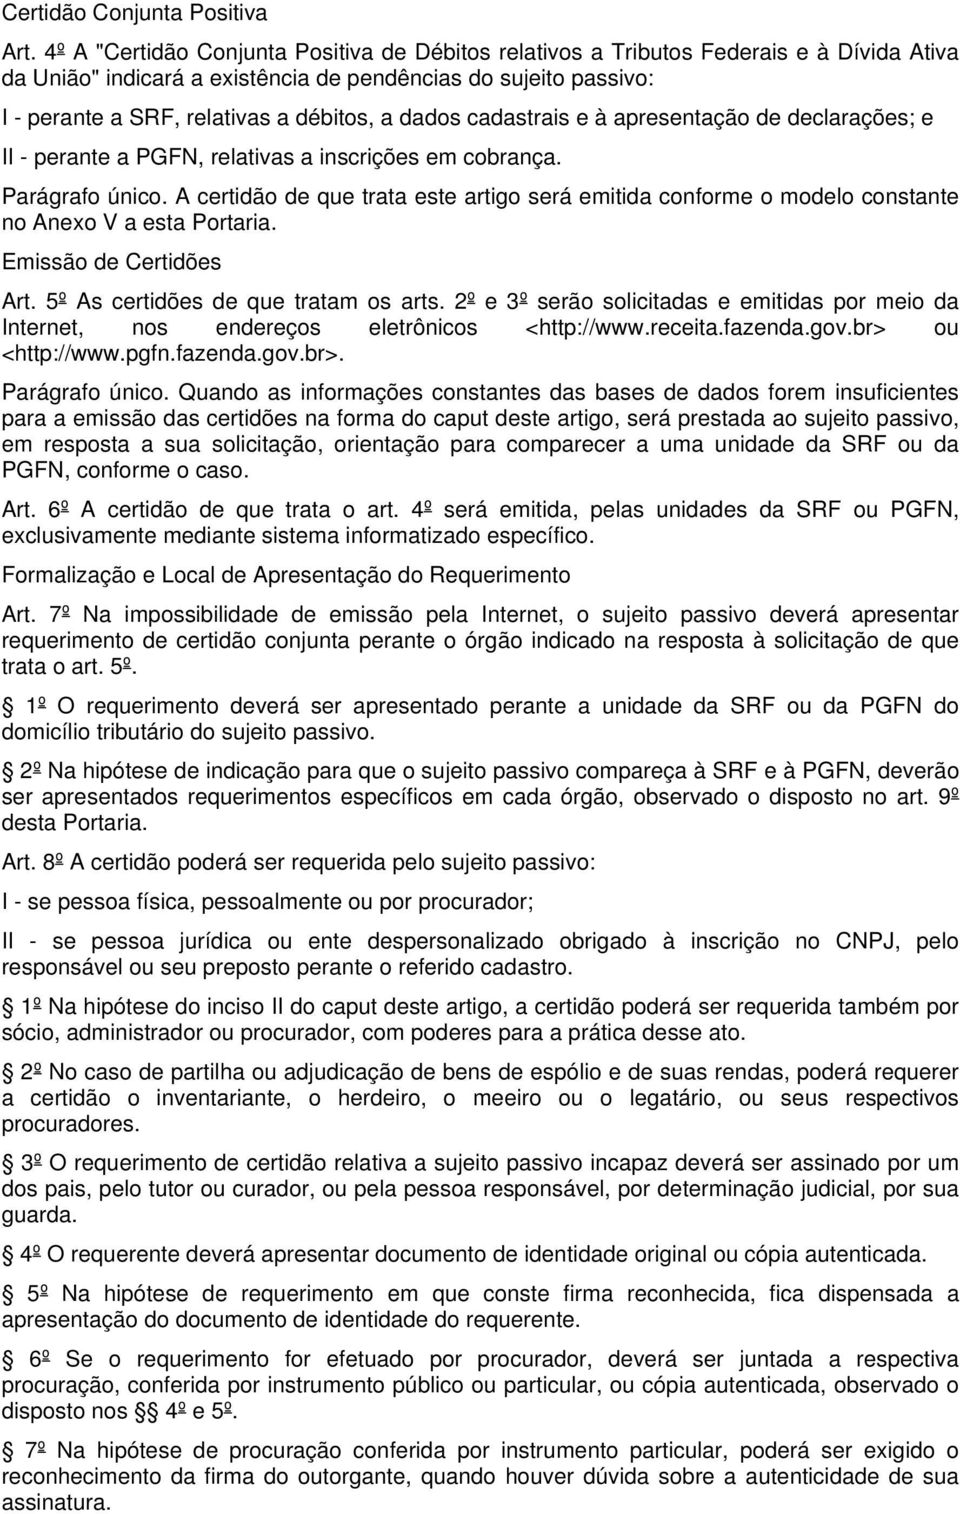 dados cadastrais e à apresentação de declarações; e II - perante a PGFN, relativas a inscrições em cobrança. Parágrafo único.